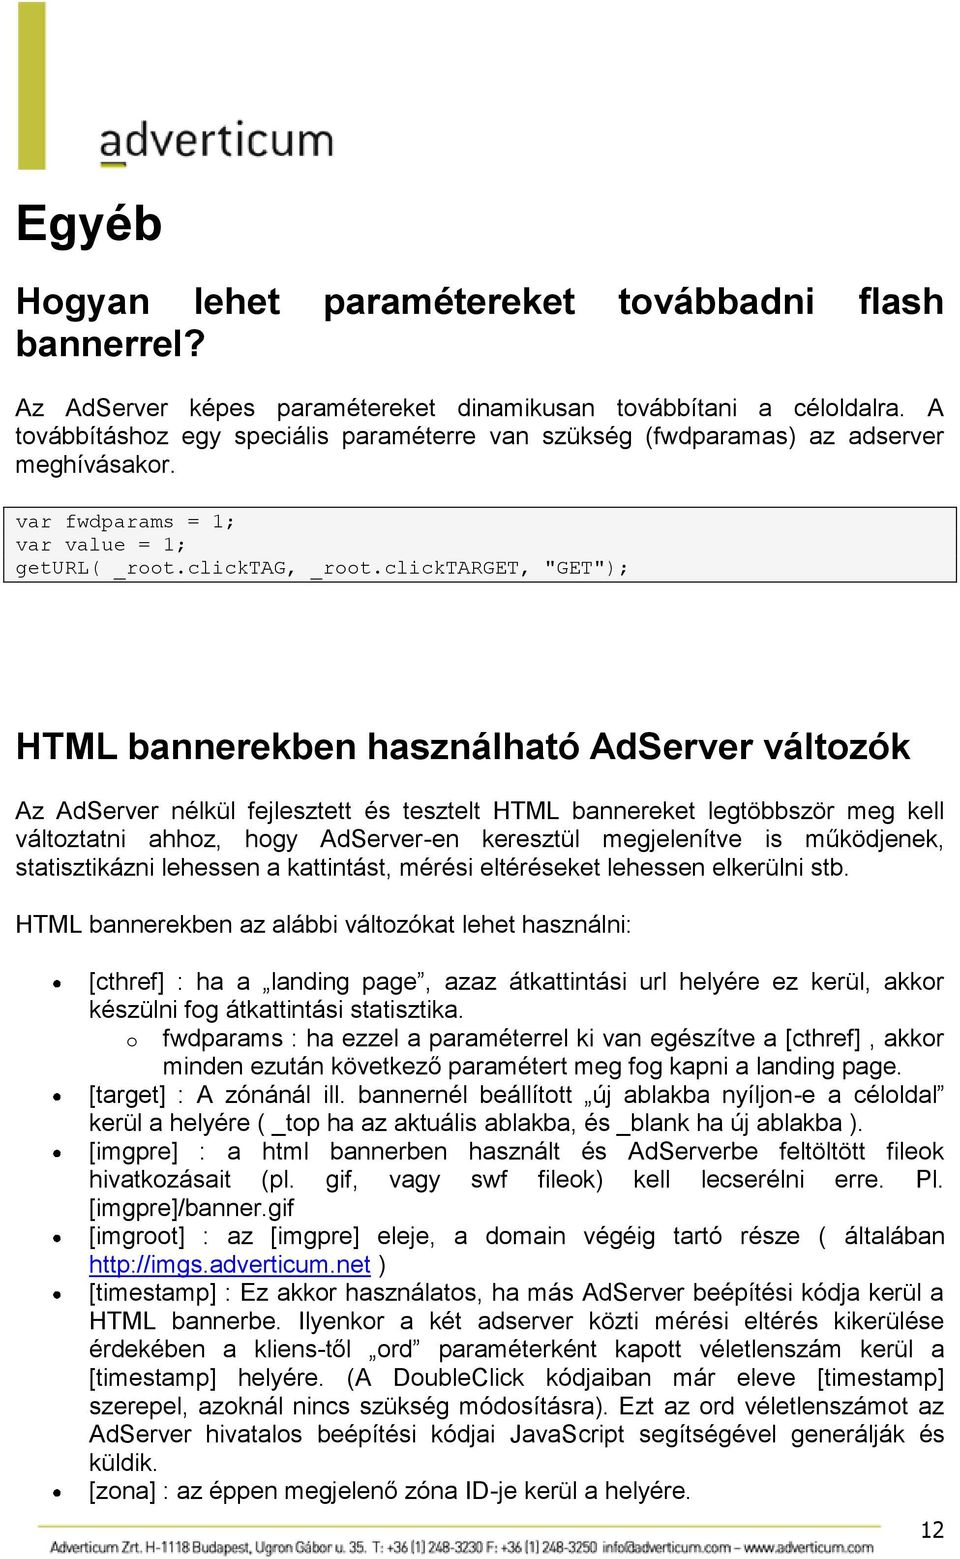 clicktarget, "GET"); HTML bannerekben használható AdServer változók Az AdServer nélkül fejlesztett és tesztelt HTML bannereket legtöbbször meg kell változtatni ahhoz, hogy AdServer-en keresztül